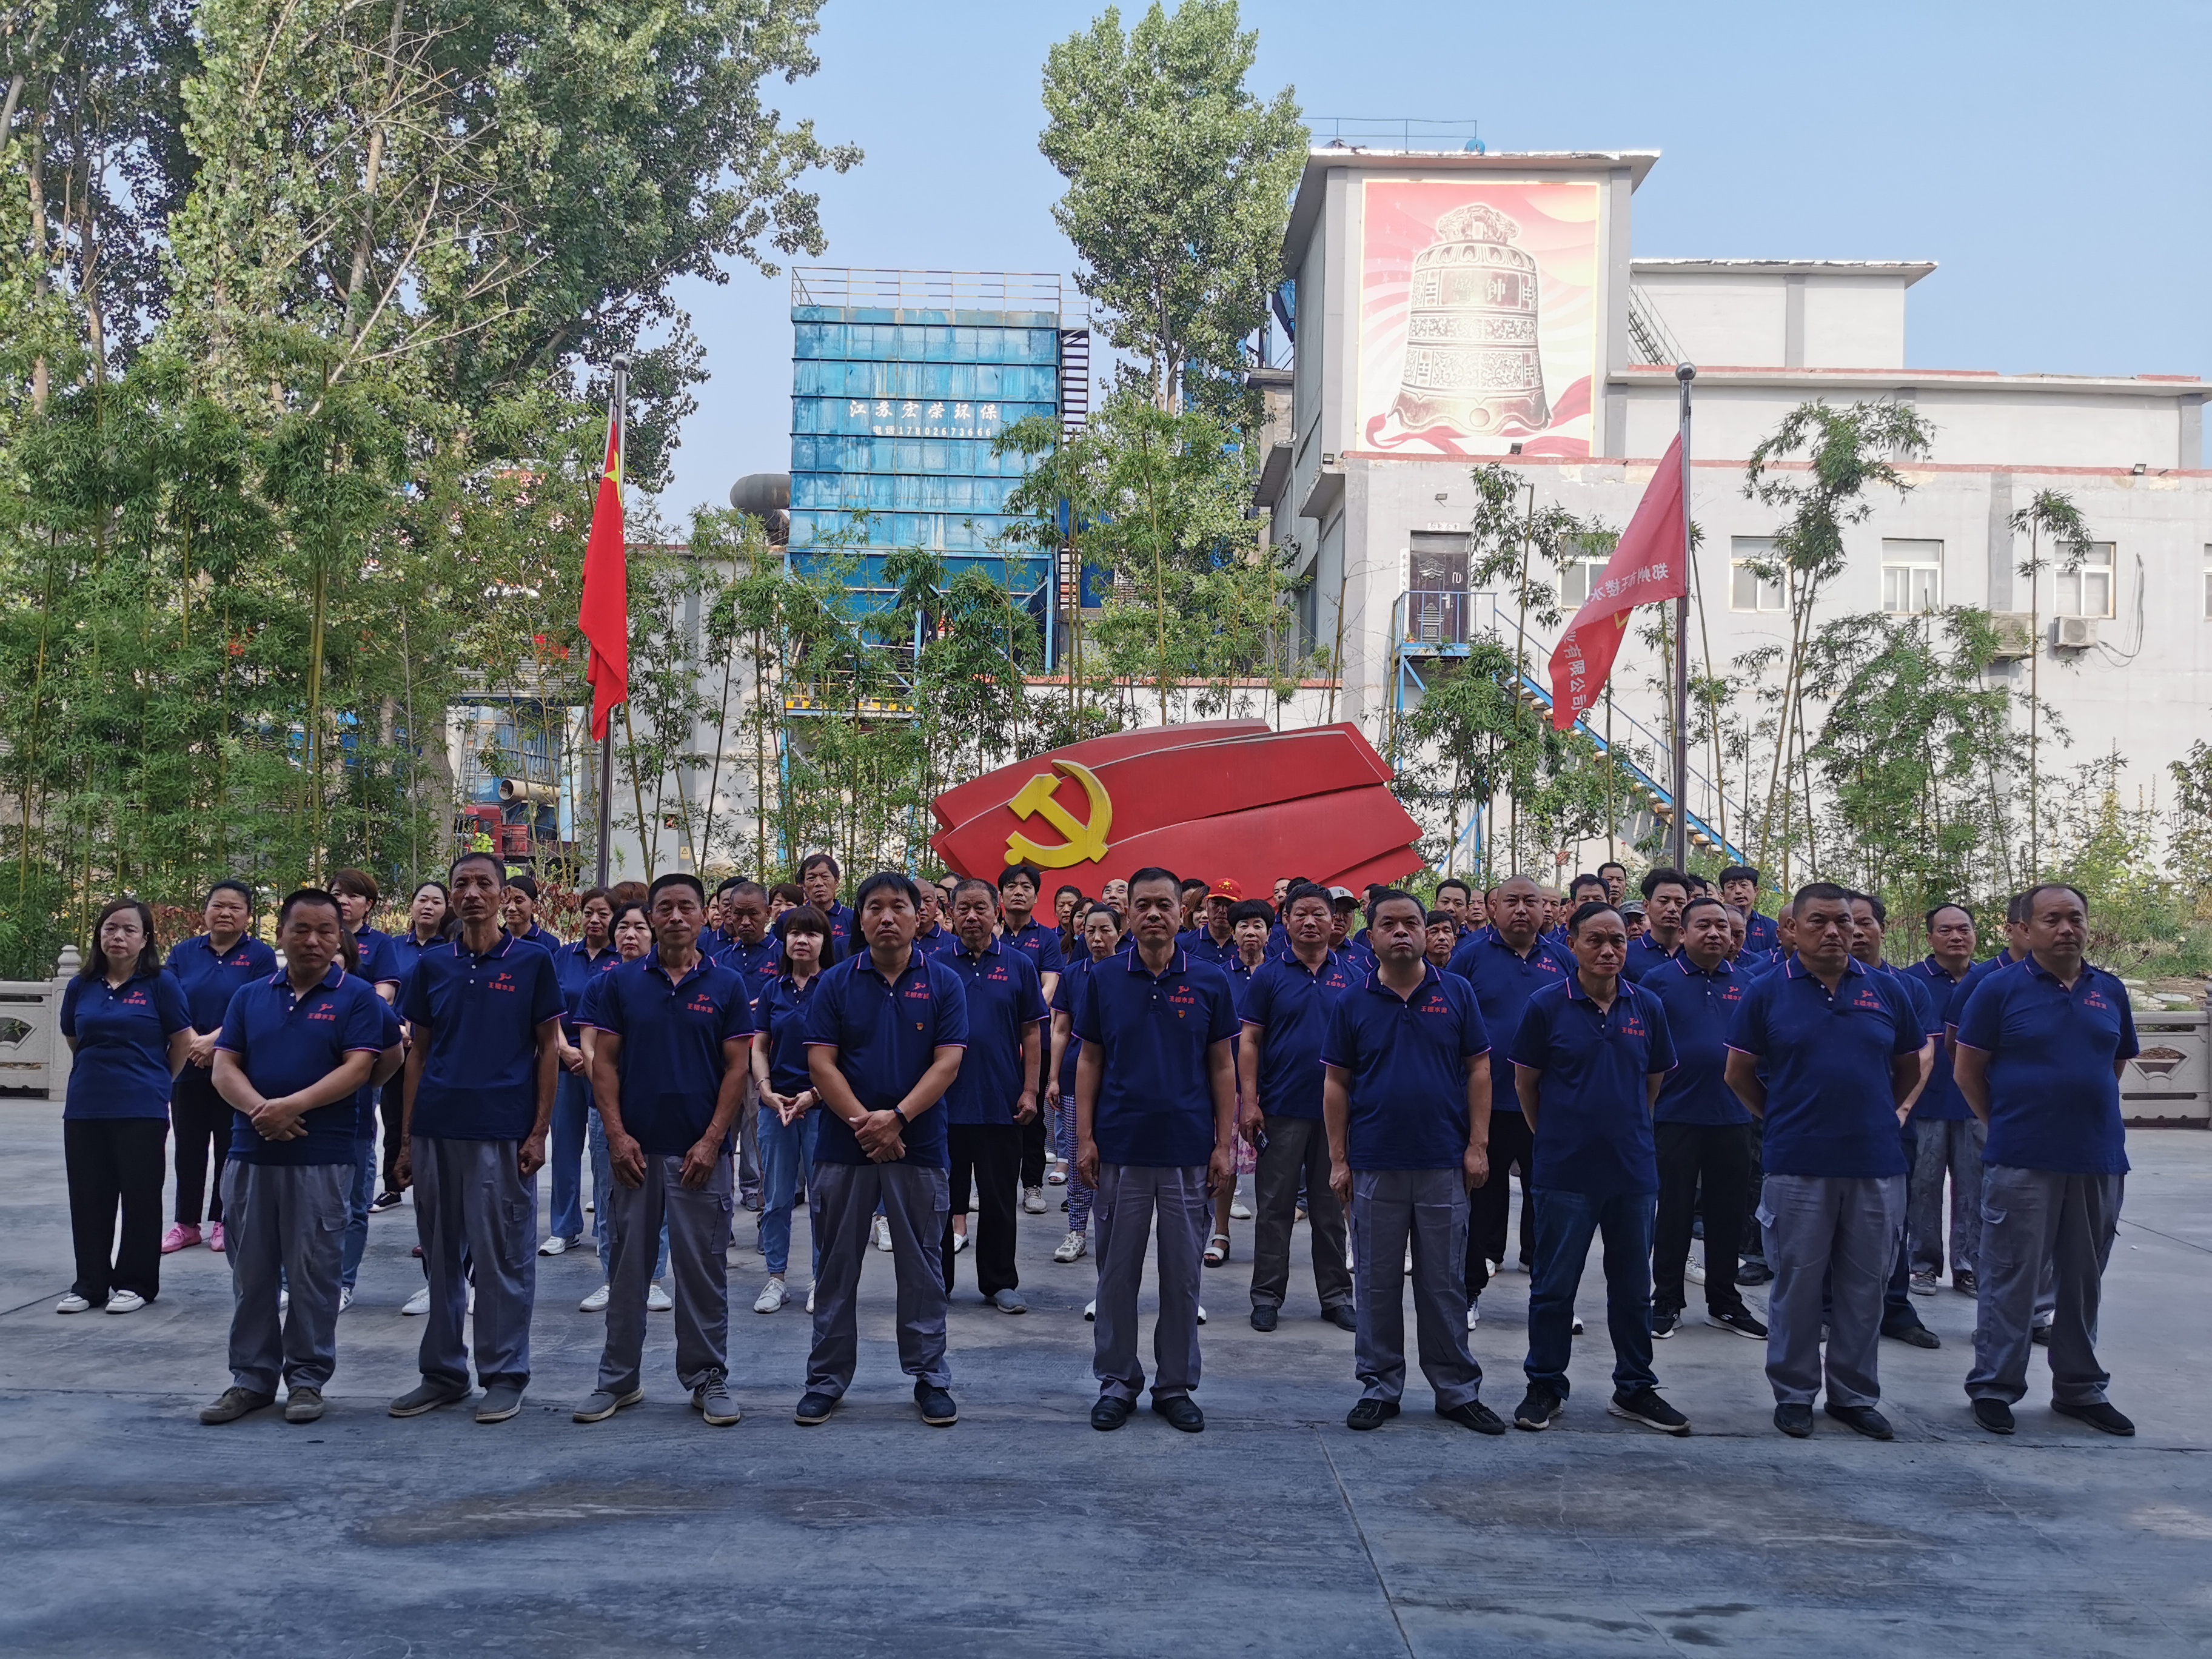 慶祝中國共產黨成立101周年以及同祝鄭州市王樓水泥工業有限公司成立30周年